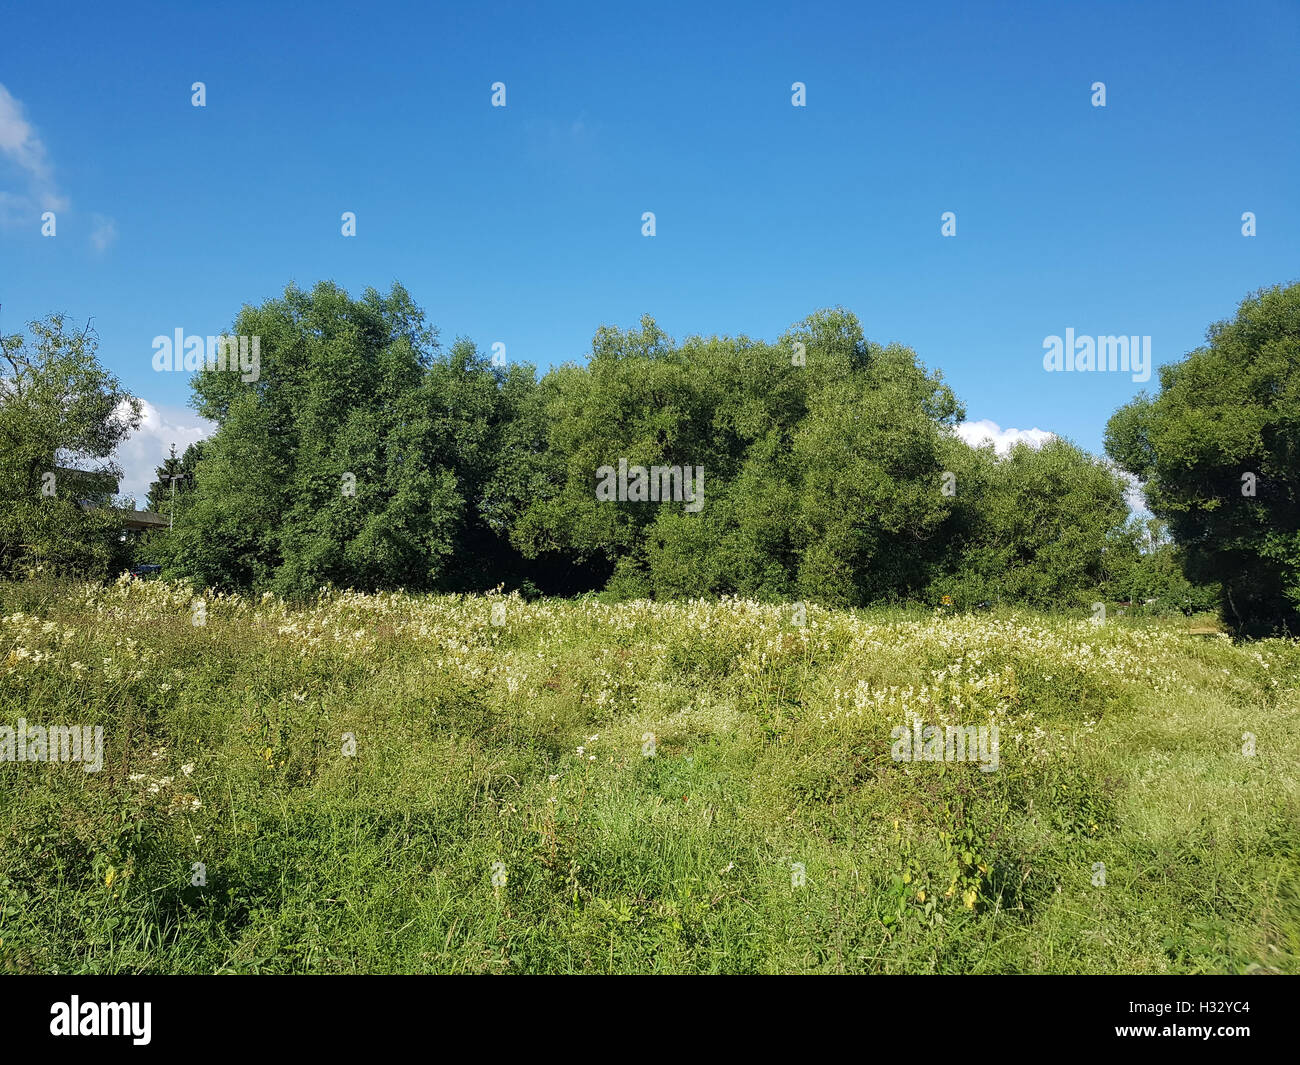 Silberweide; Salix Alba; Blatt; Laubbaum, Heilpflanze Stockfoto